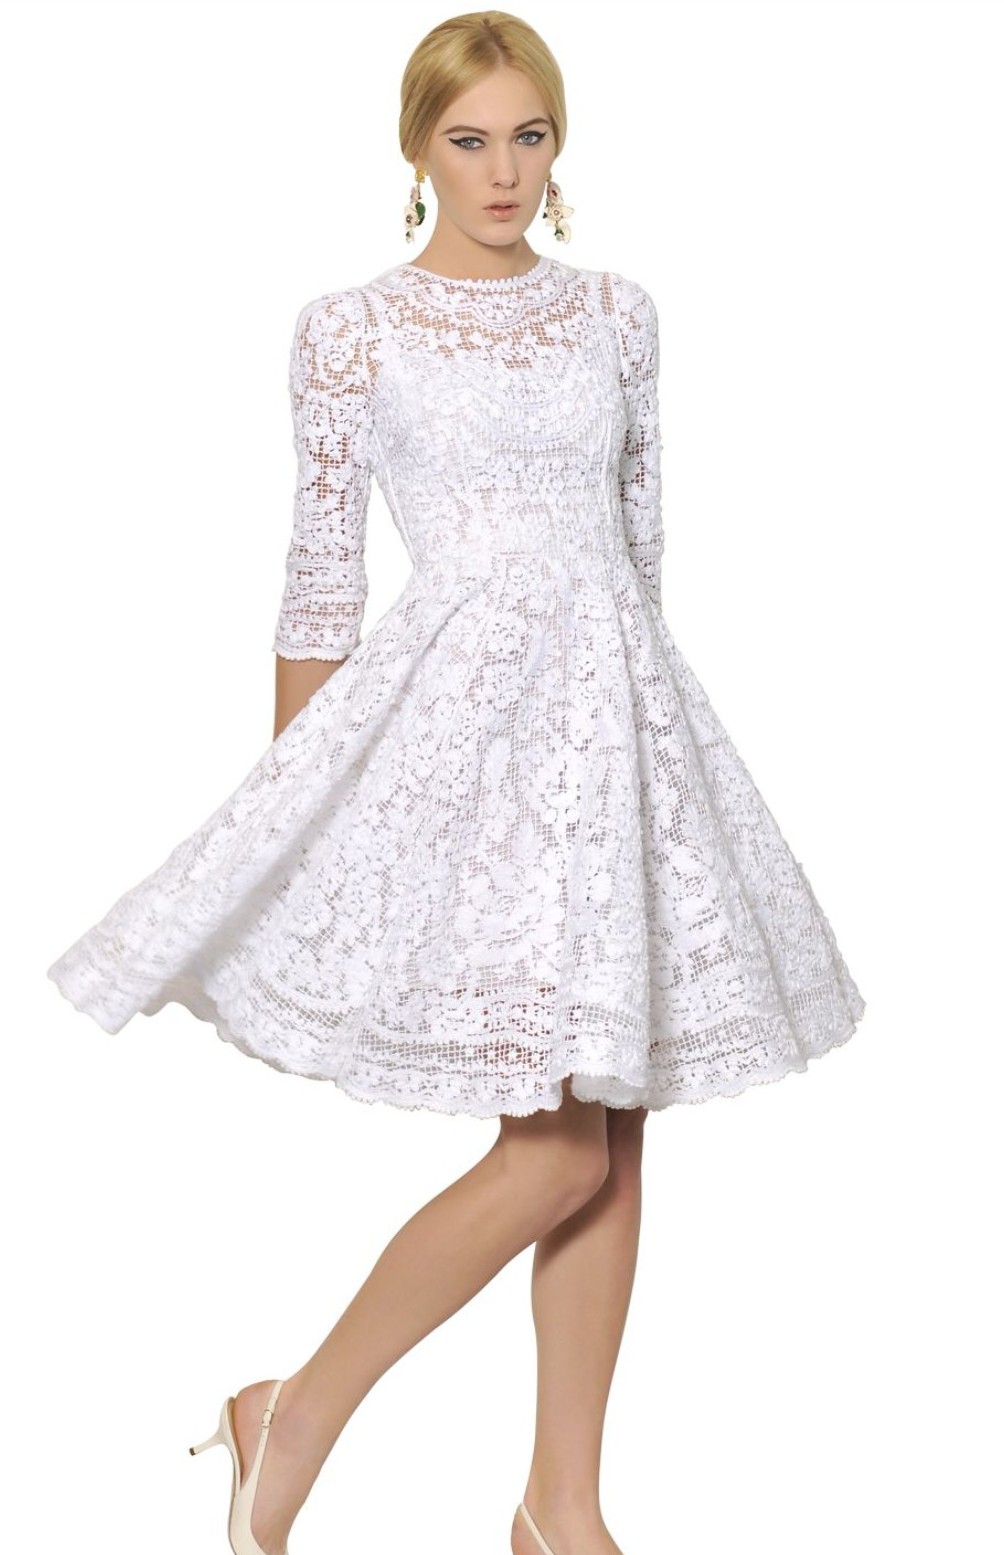 dolce gabbana white dress